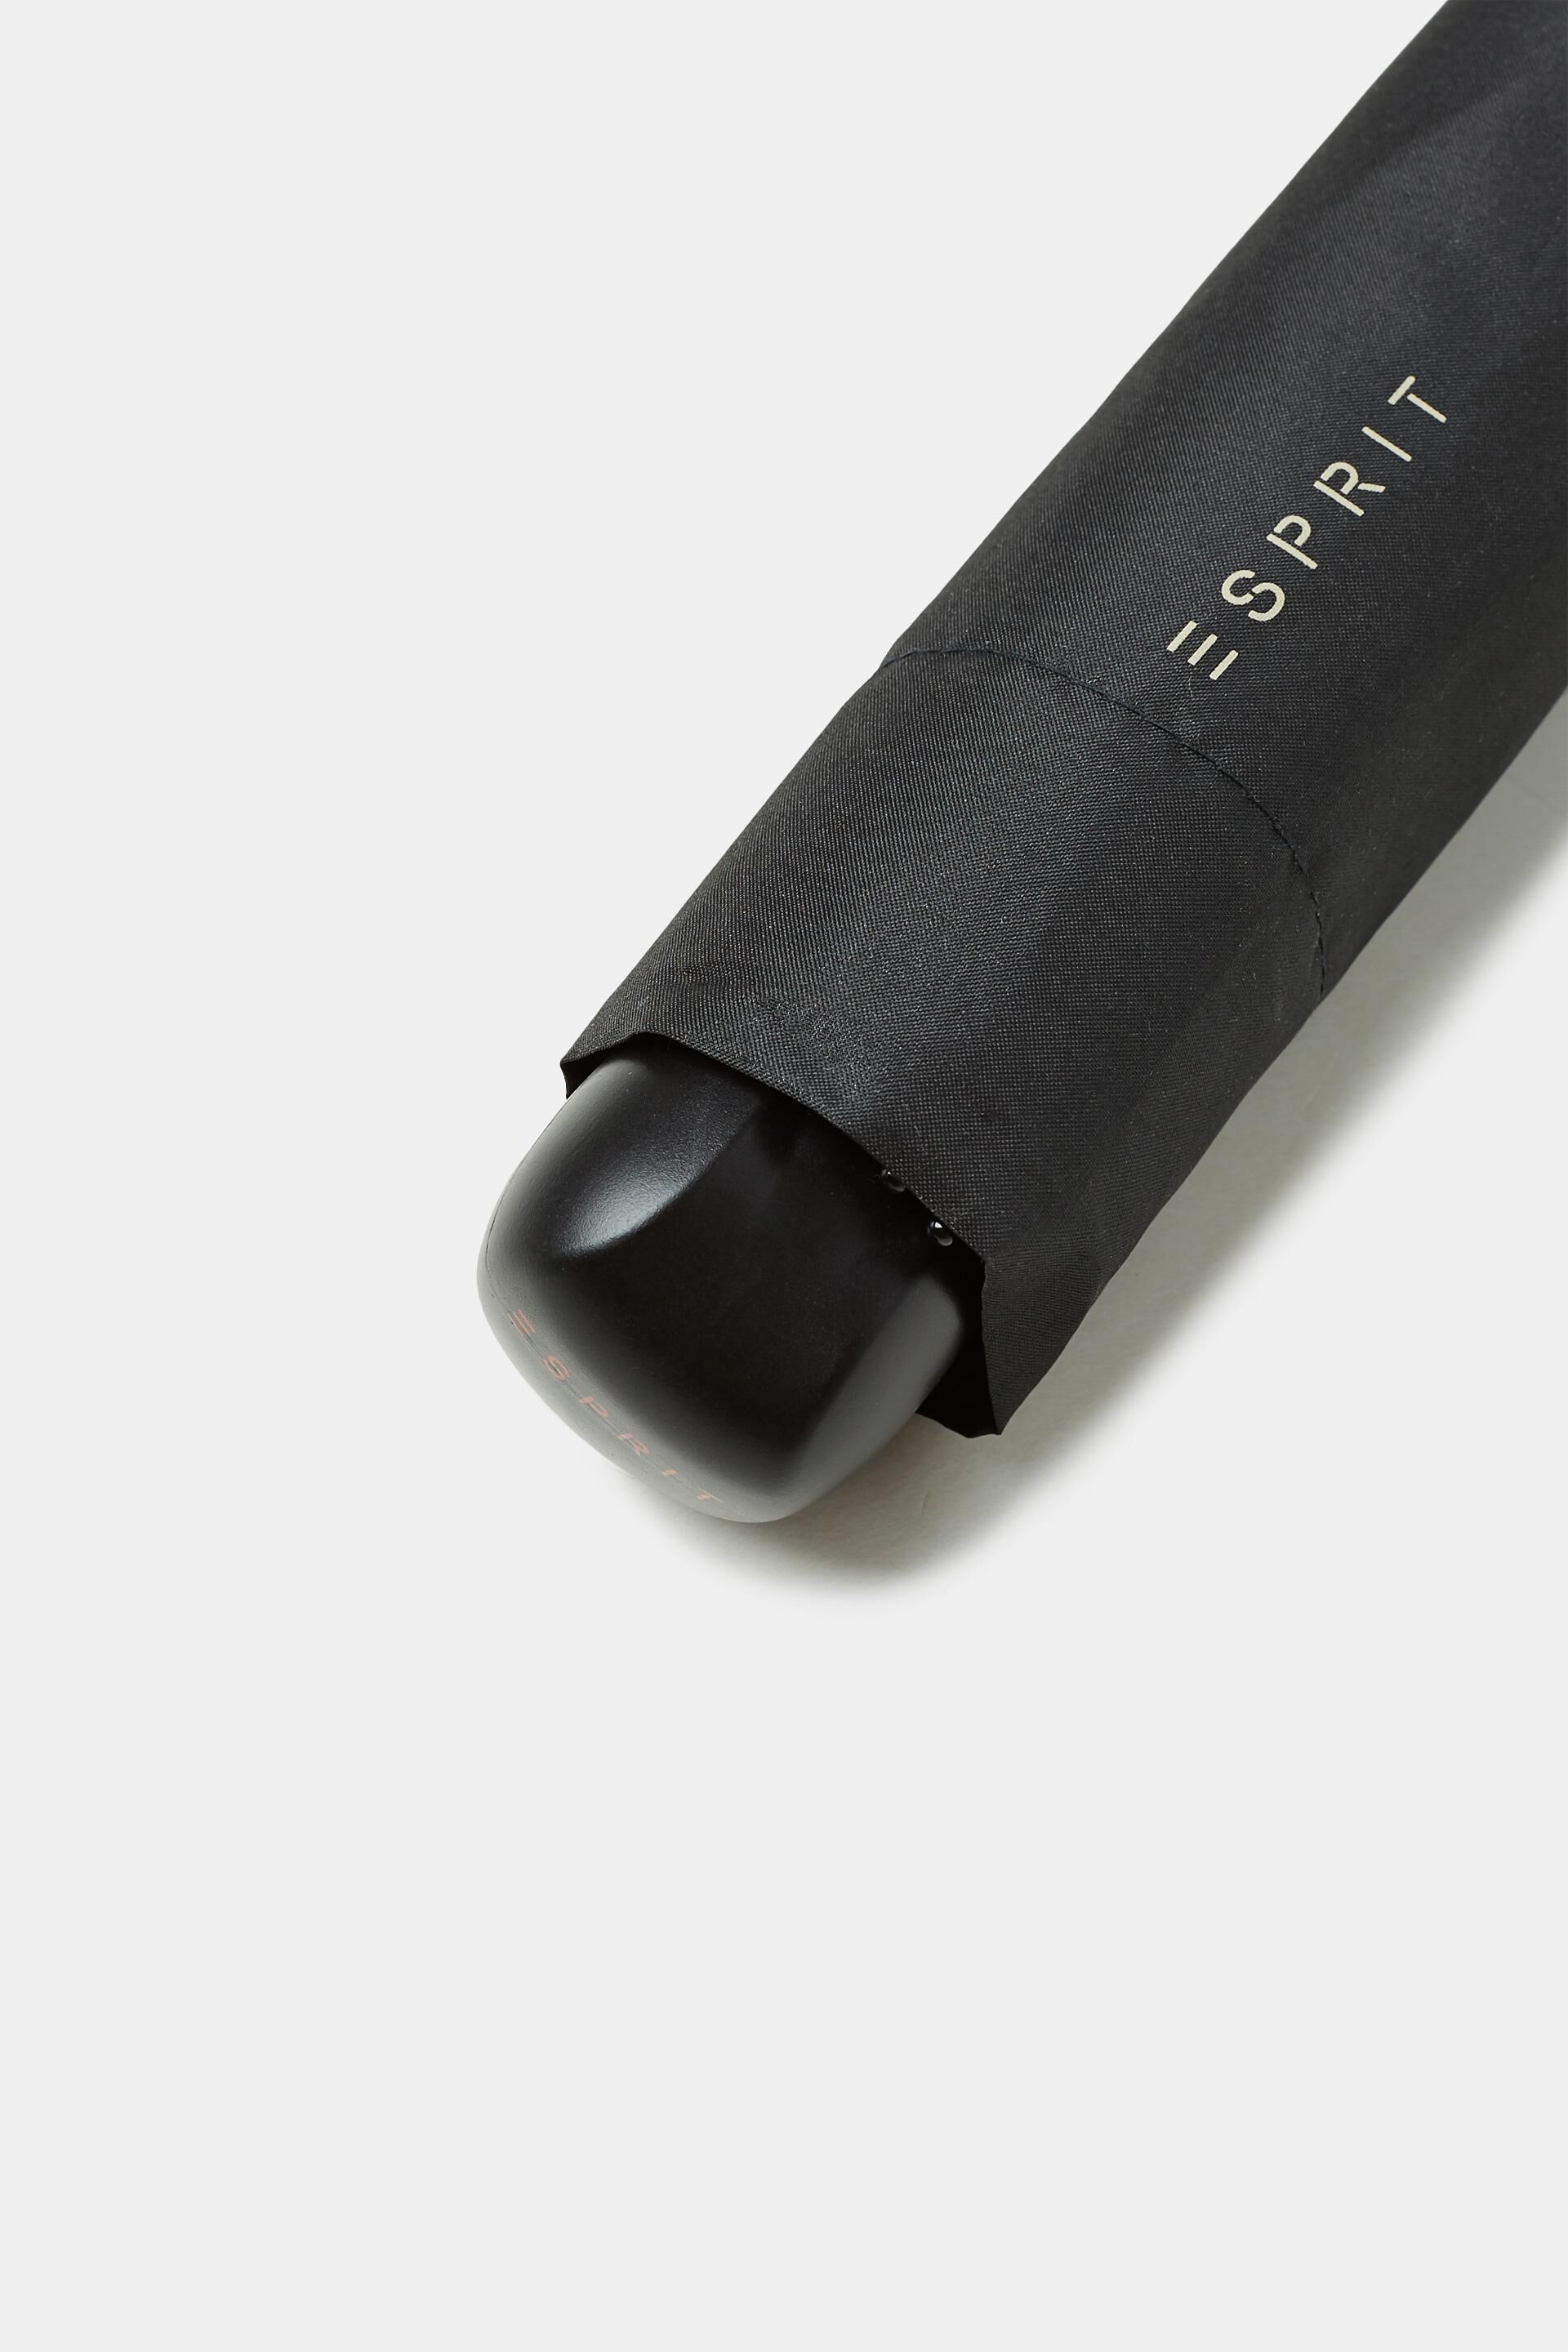 Esprit Online Store Mini-Taschenschirm mit rundem Griff